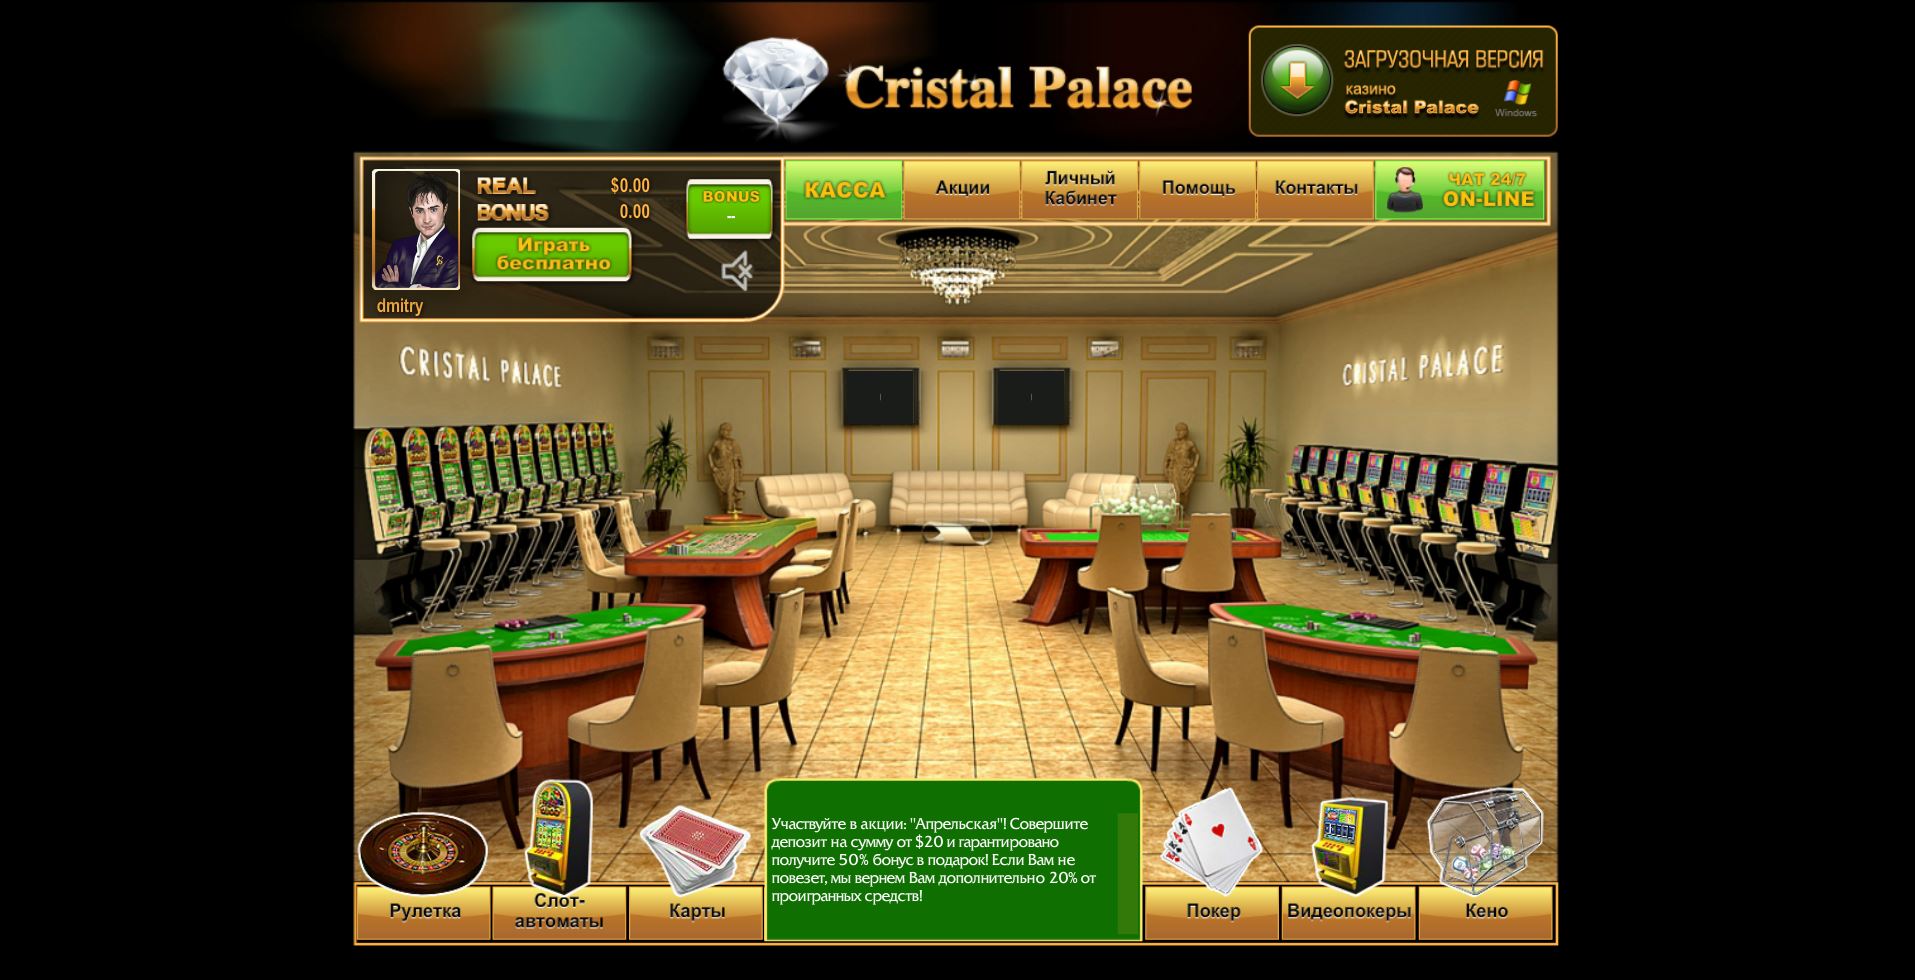 Обзоры crystal palace казино игра дубль казино